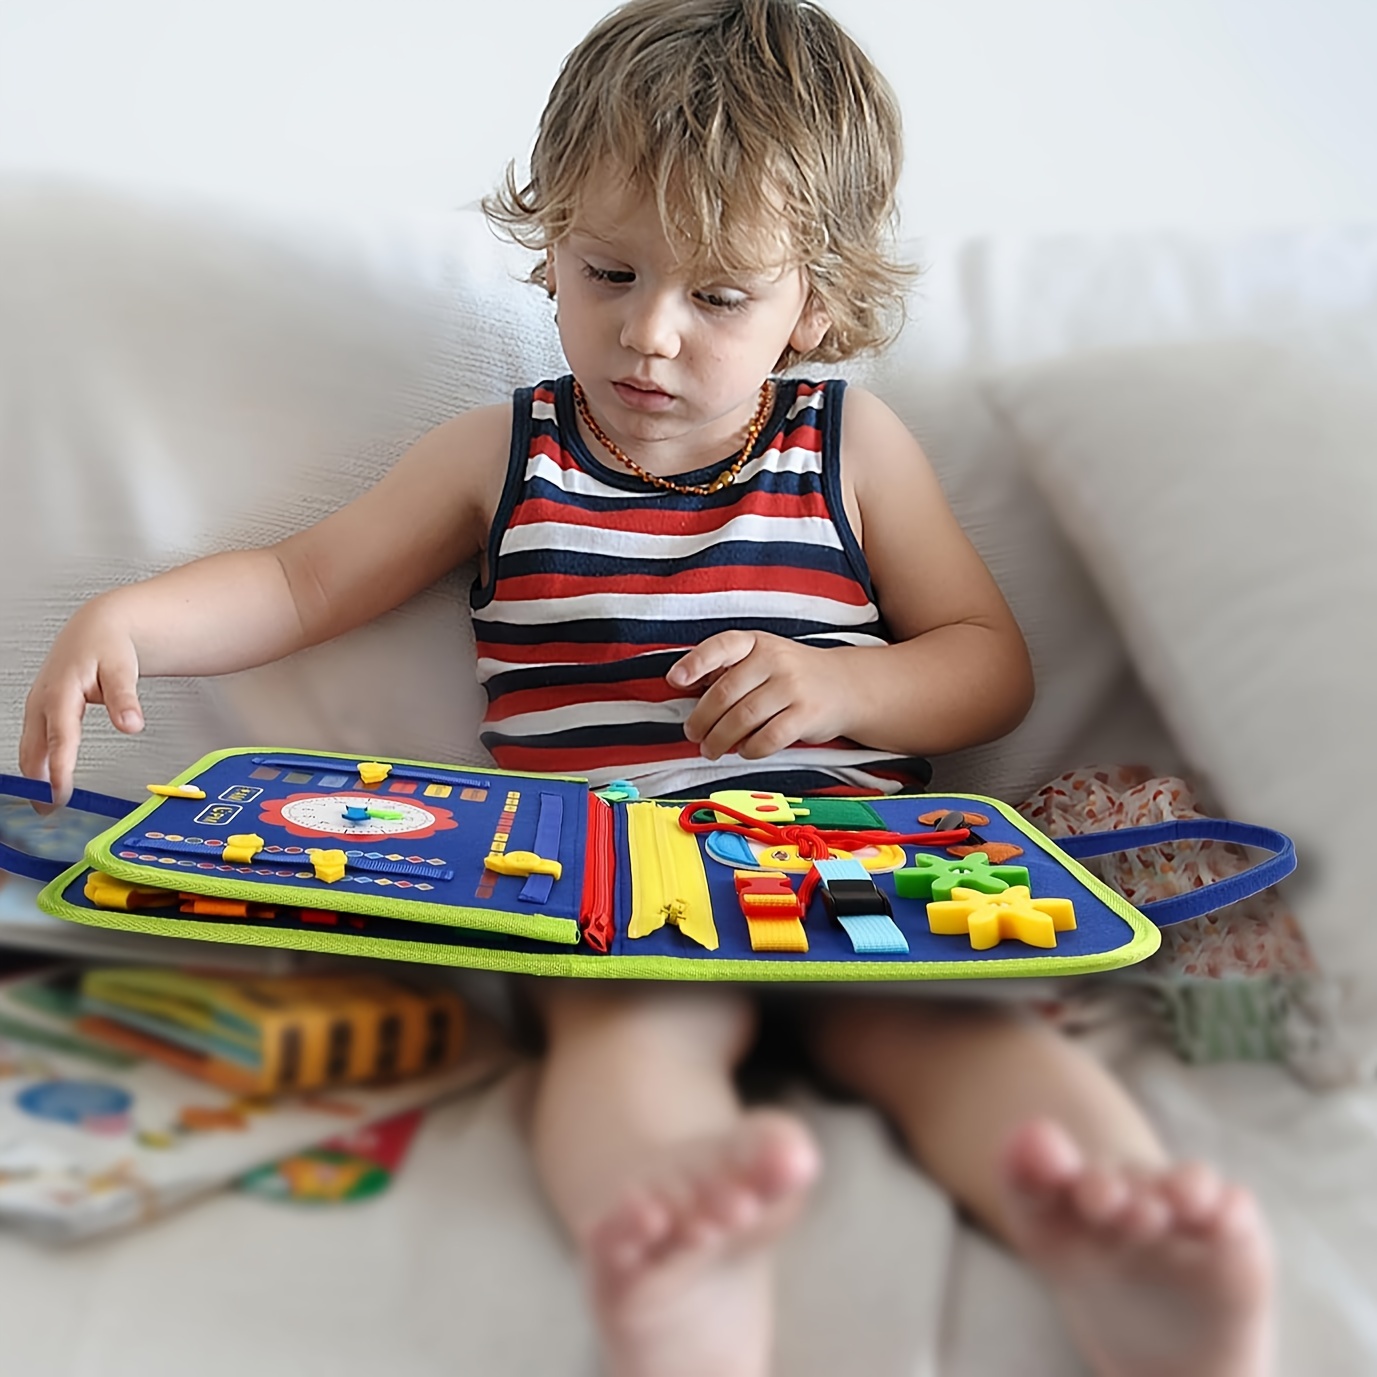 Regalo para niña de 1 a 4 años, juguete Montessori para niñas